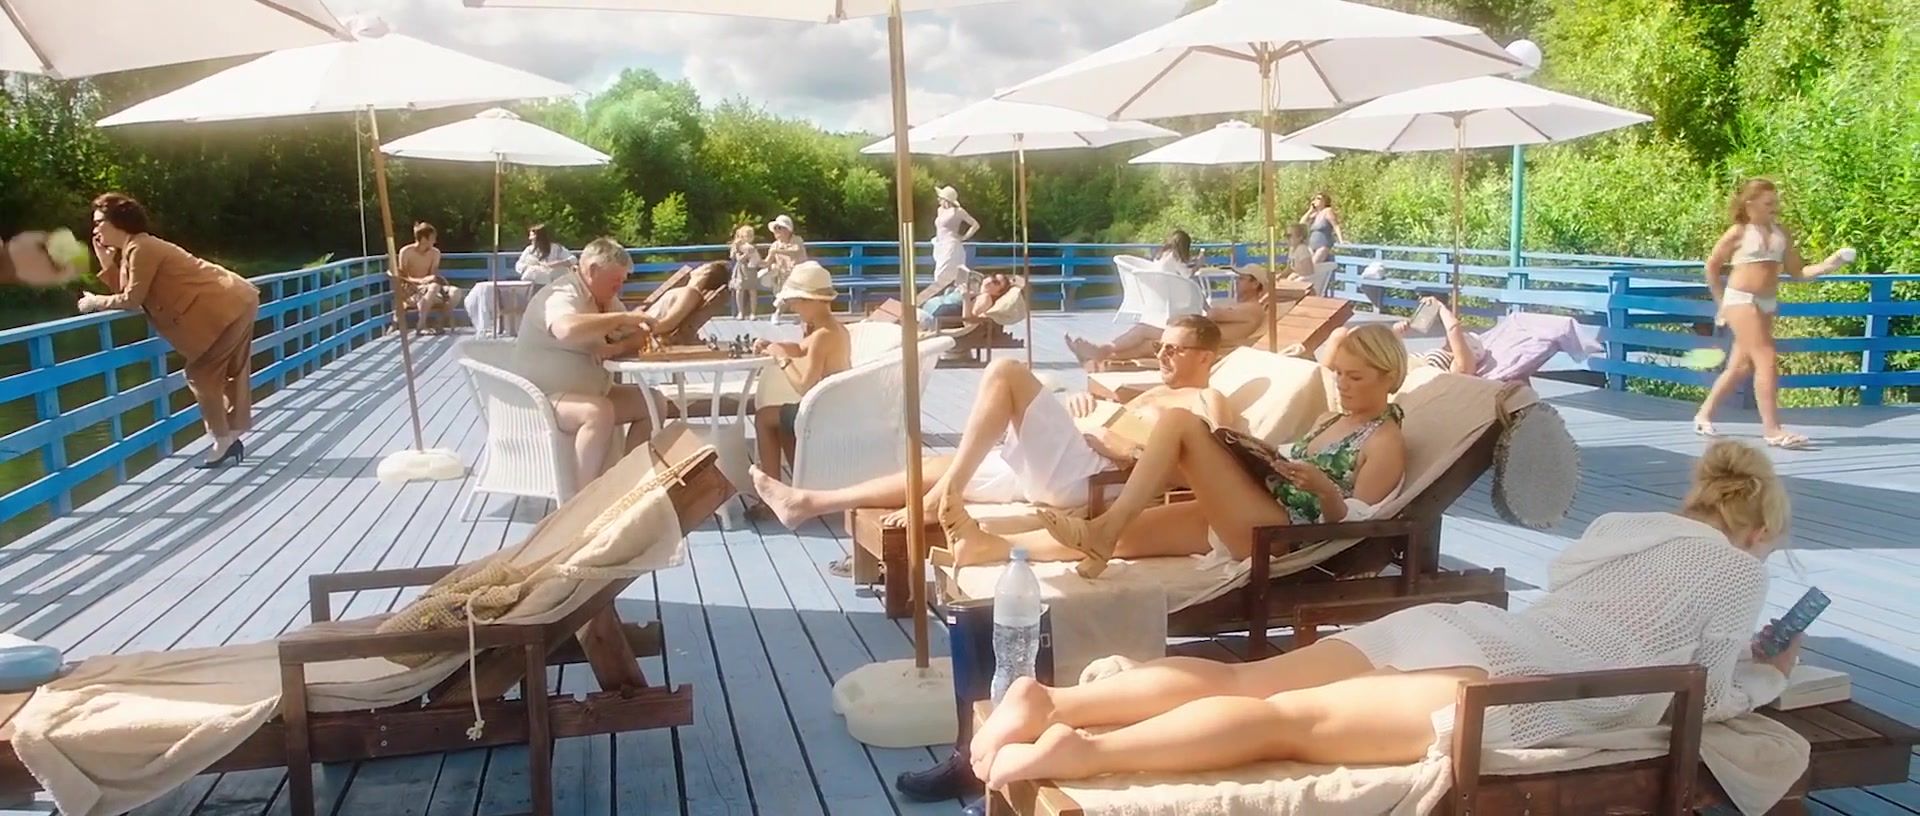 Teenage Girl Porn Taisiya Vilkova, Viktoriya Tolstoganova, Darya Zhovner, Polina Vitorgan nude - Sex scene from movie Vyshe neba (2019) HBrowse - 1